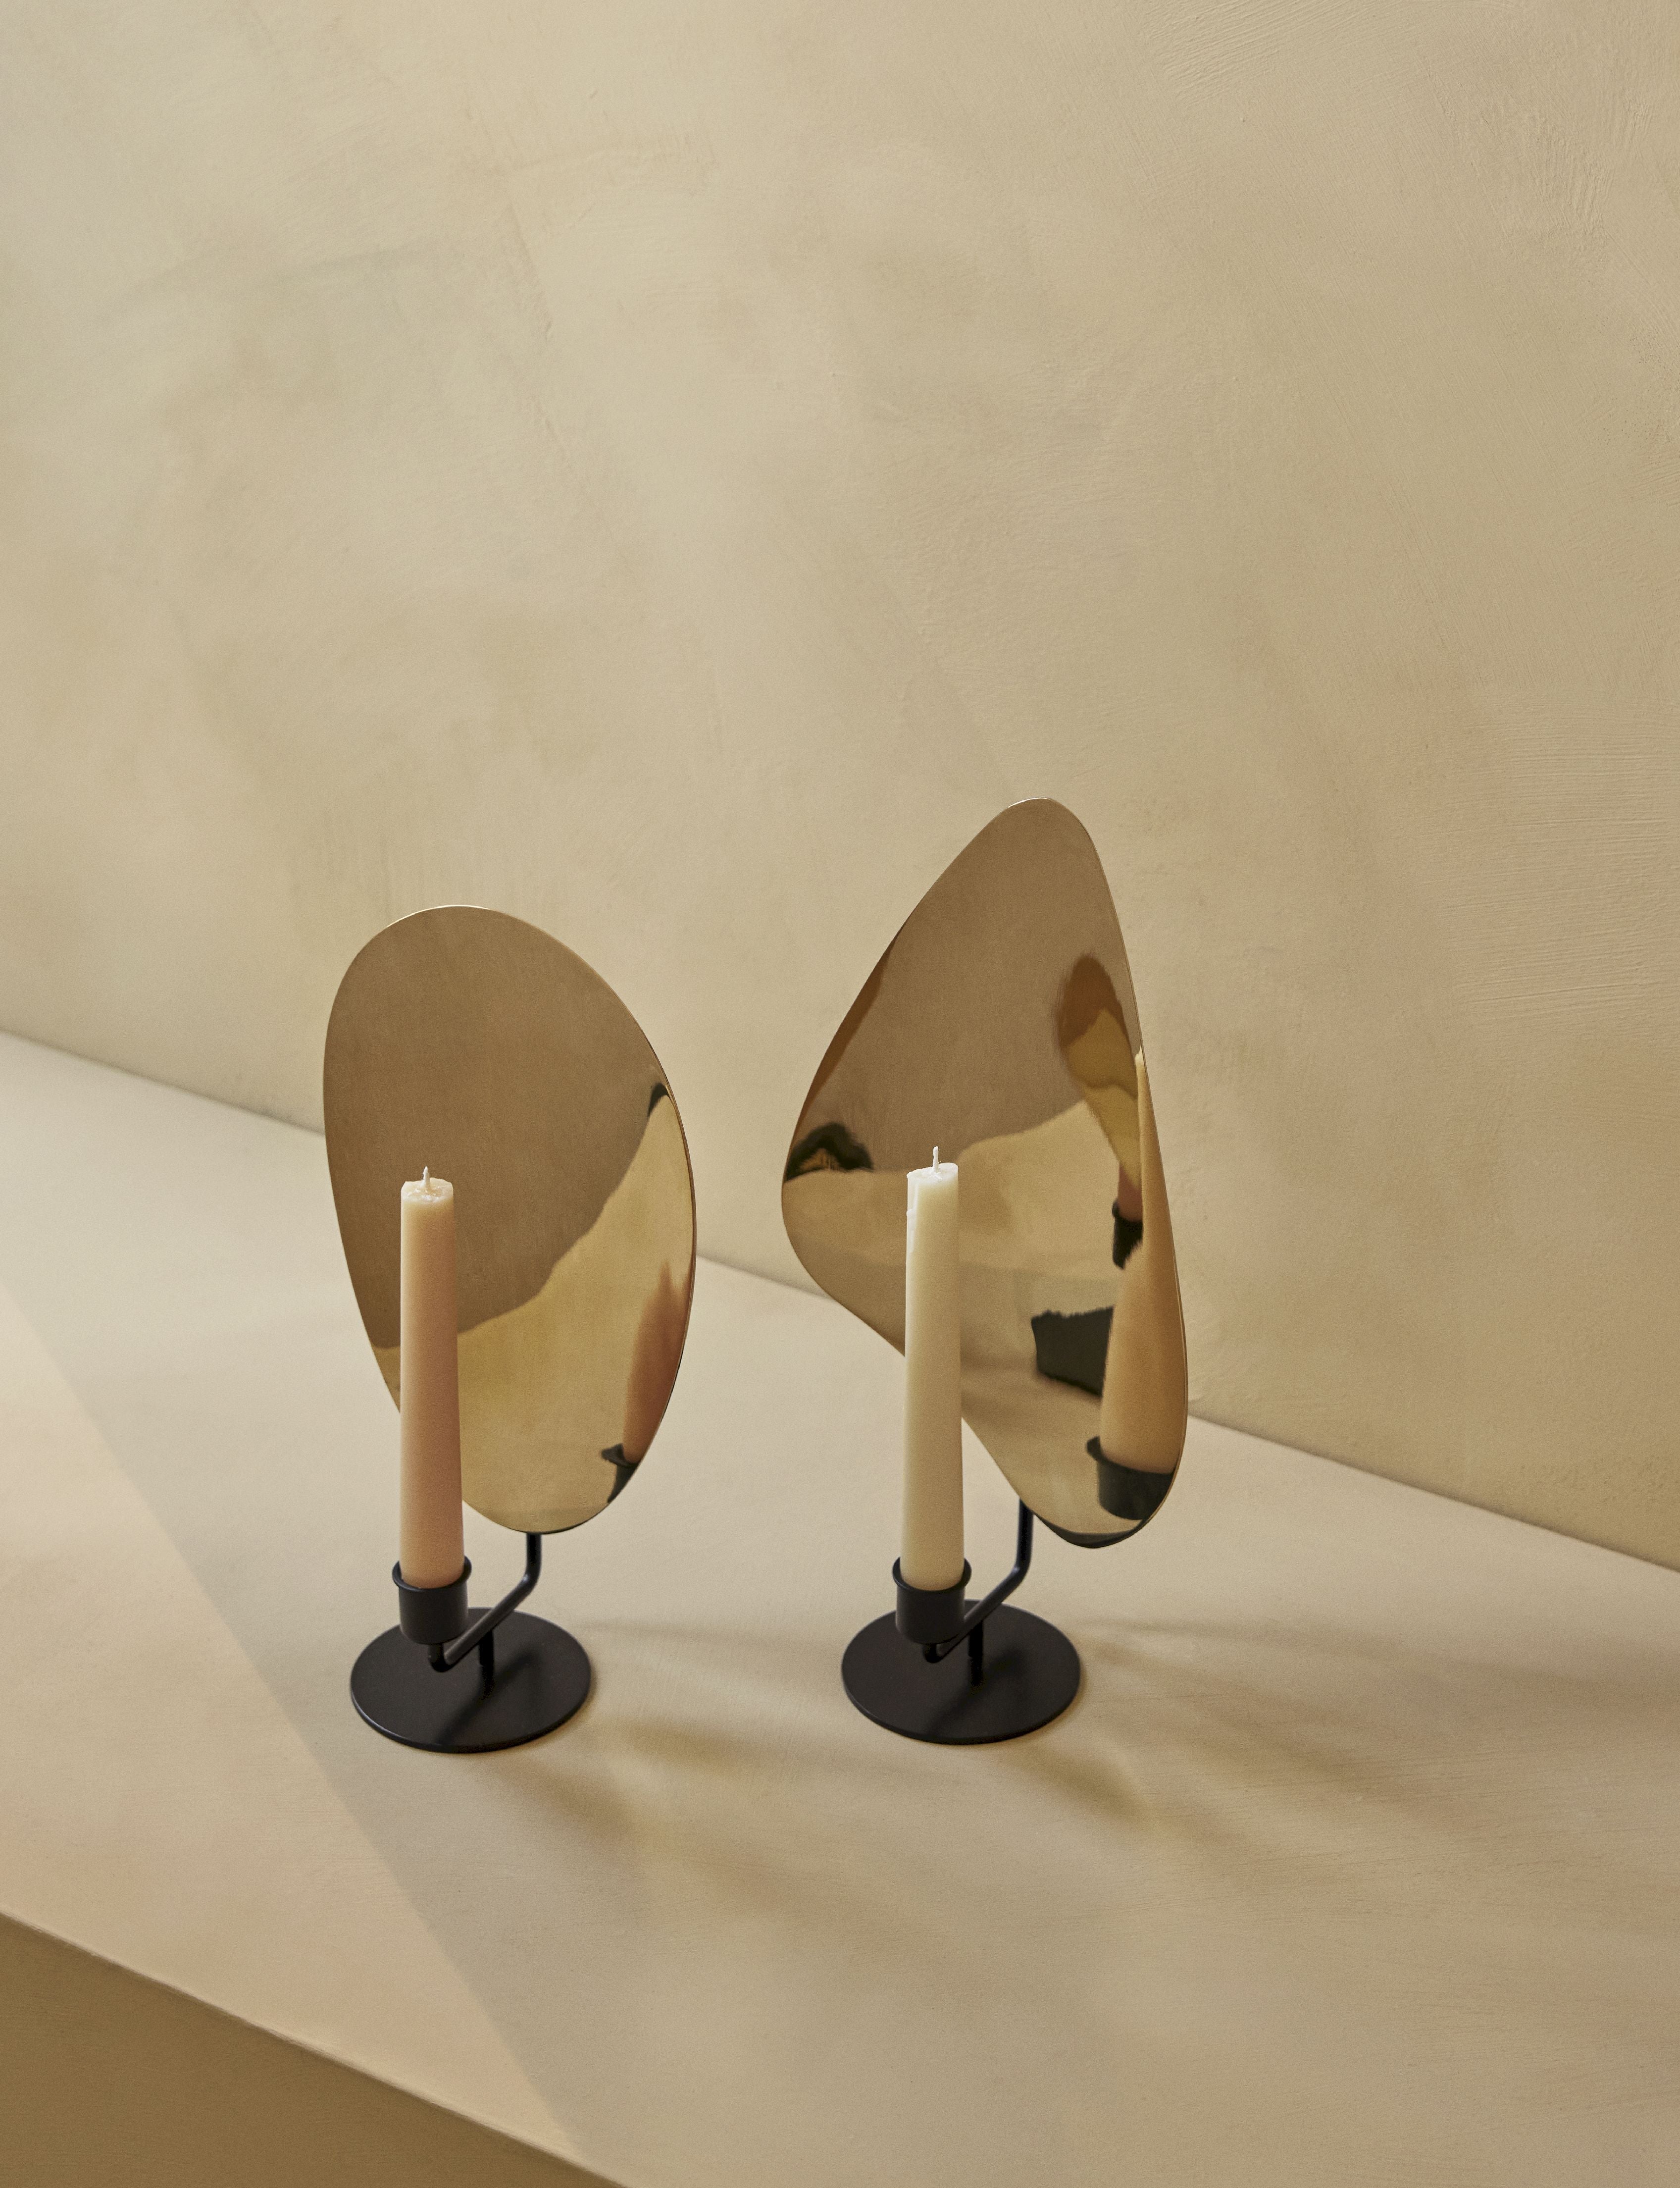 奥多·哥本哈根弗朗布桌烛台30厘米，黑色/抛光黄铜